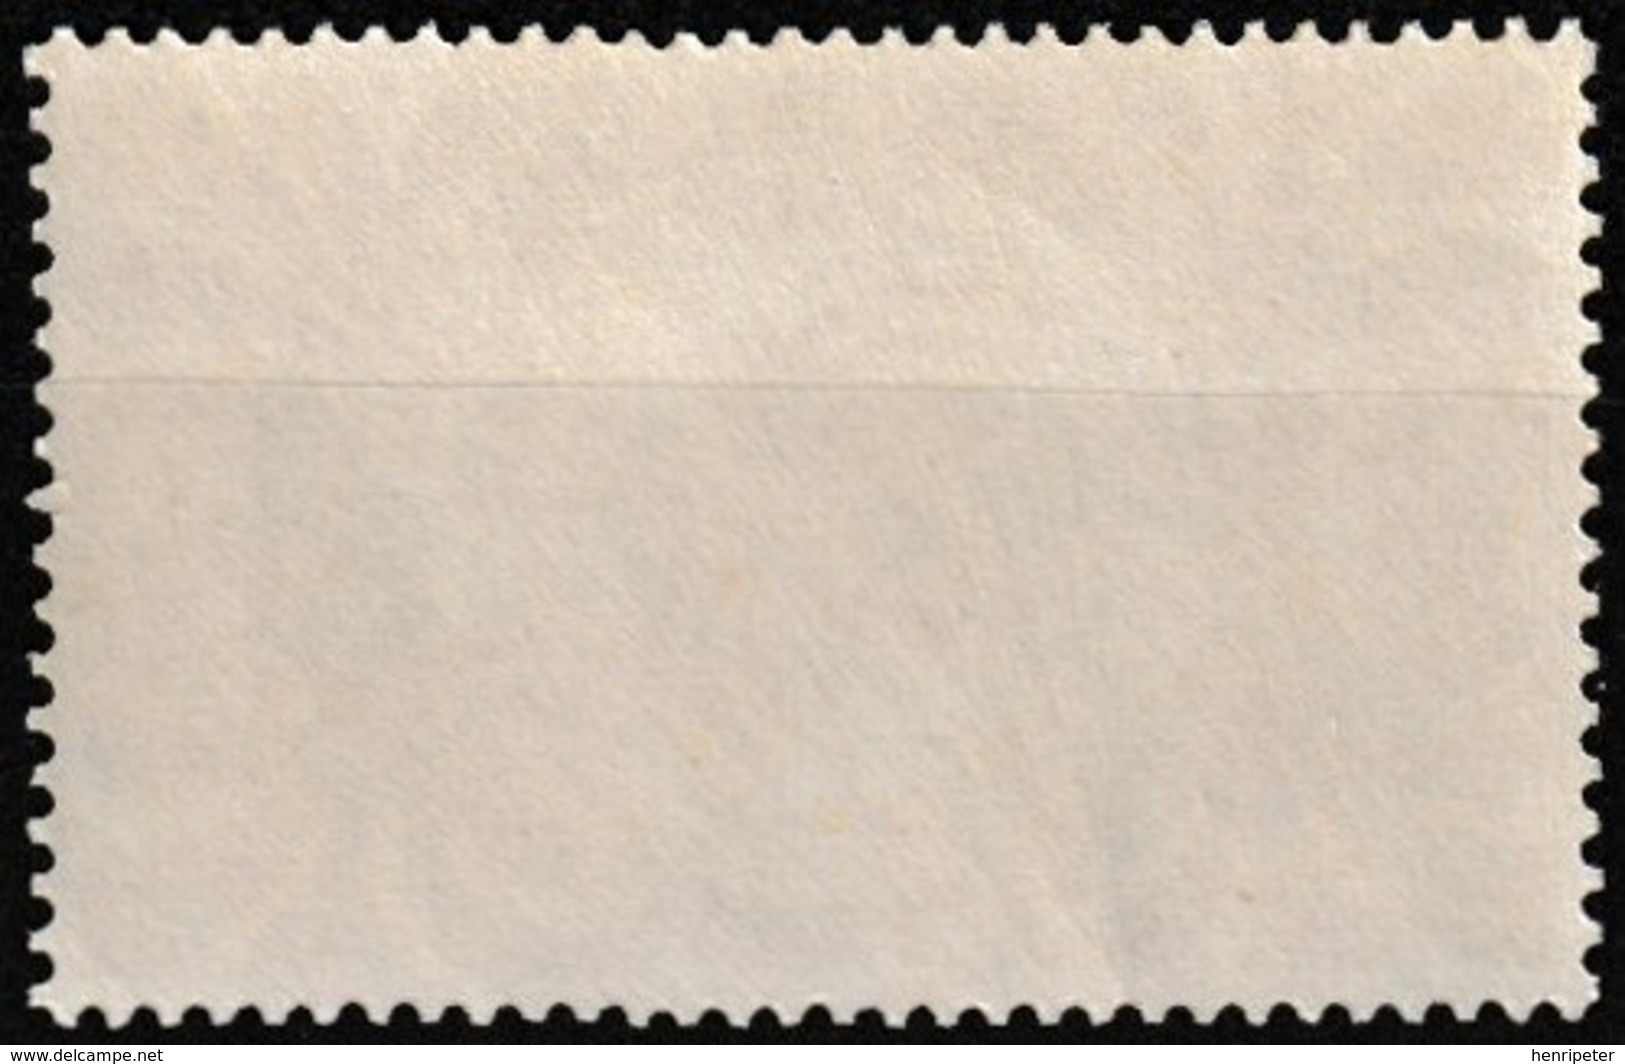 Timbre-poste Gommé Neuf** - Série De Londres Cagou - N° 230 (Yvert) - Nouvelle-Calédonie Et Dépendances 1942 - Ungebraucht